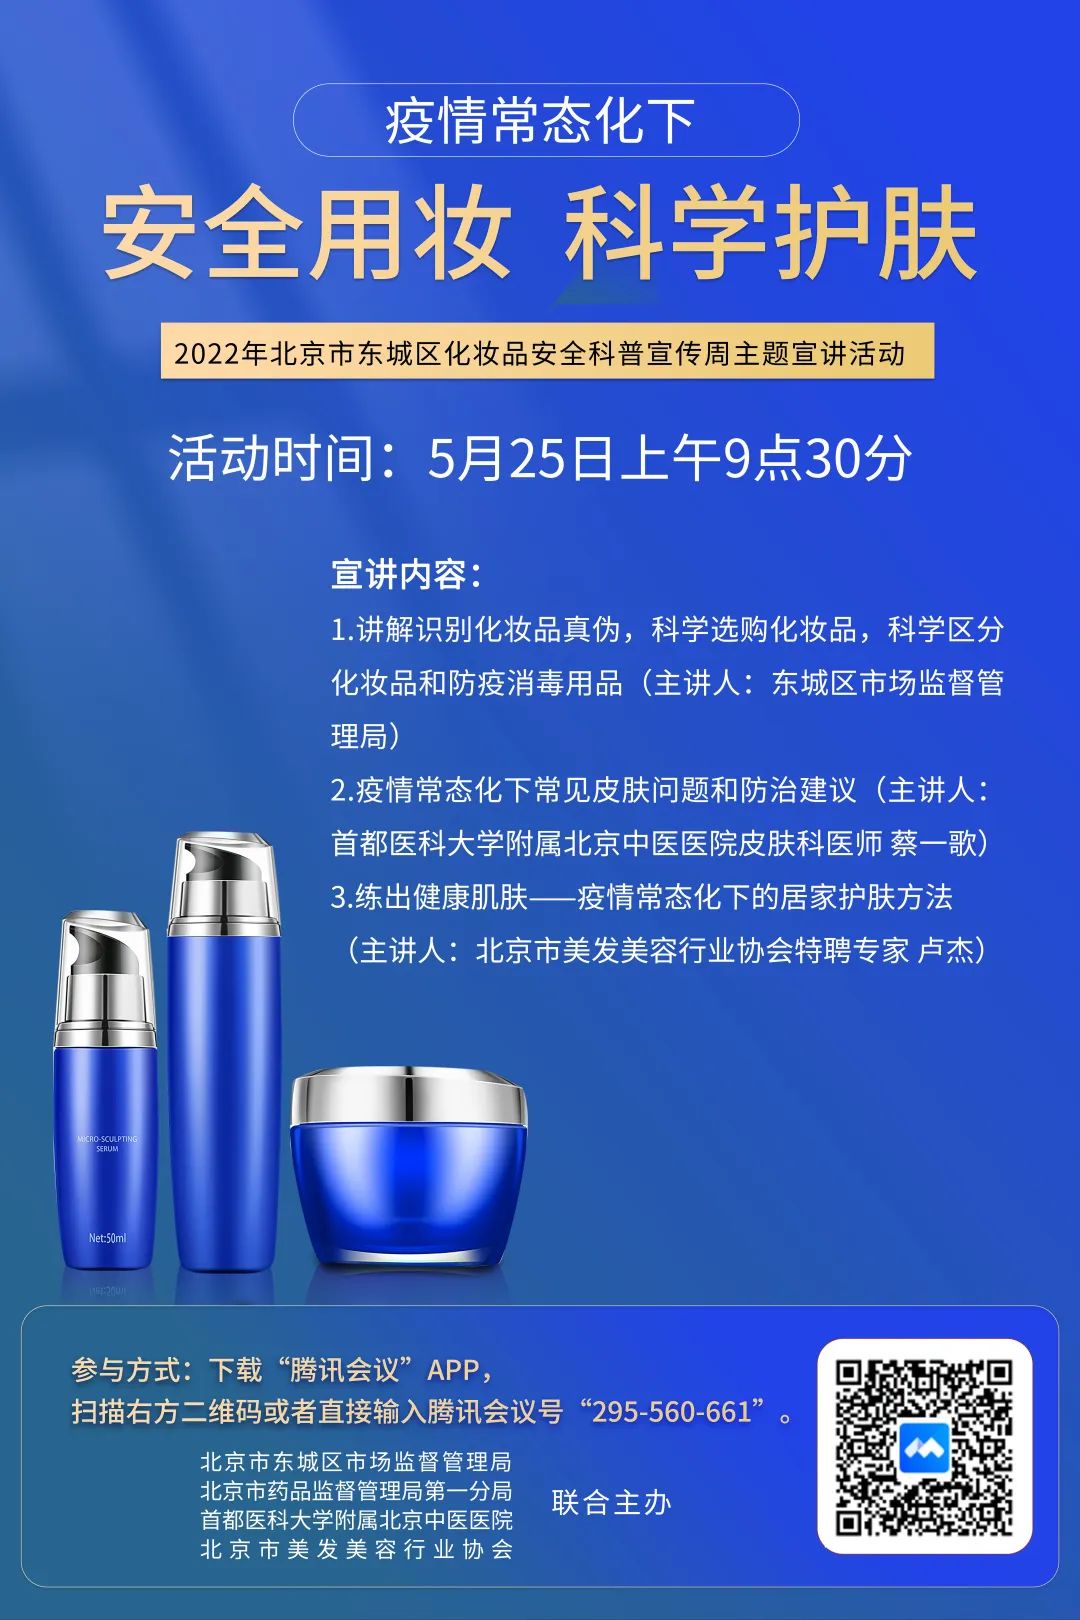 北京市东城区化妆品安全科普宣传周线上主题宣讲活动预告